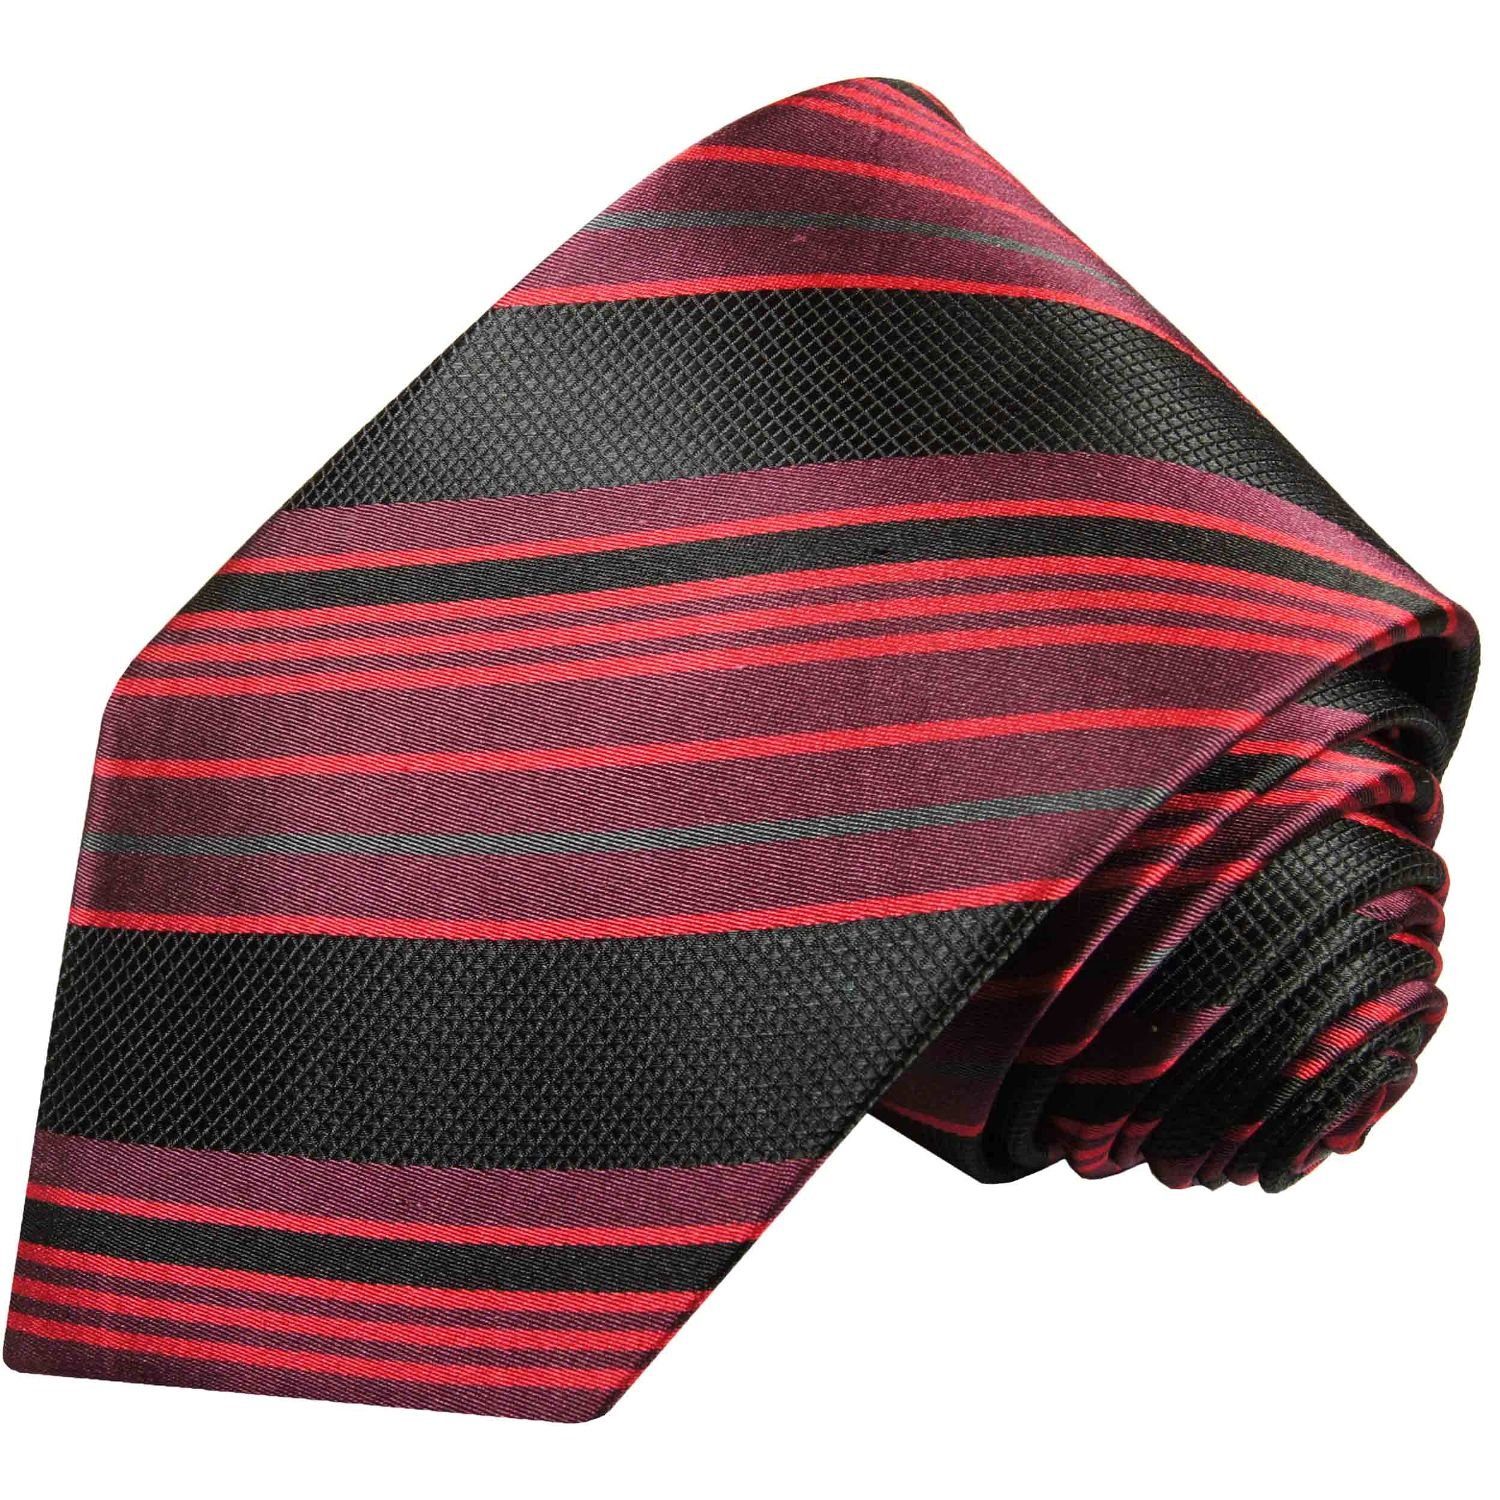 Herren Krawatten Paul Malone Krawatte Herren Seidenkrawatte Schlips modern gestreift 100% Seide Schmal (6cm), rot 515